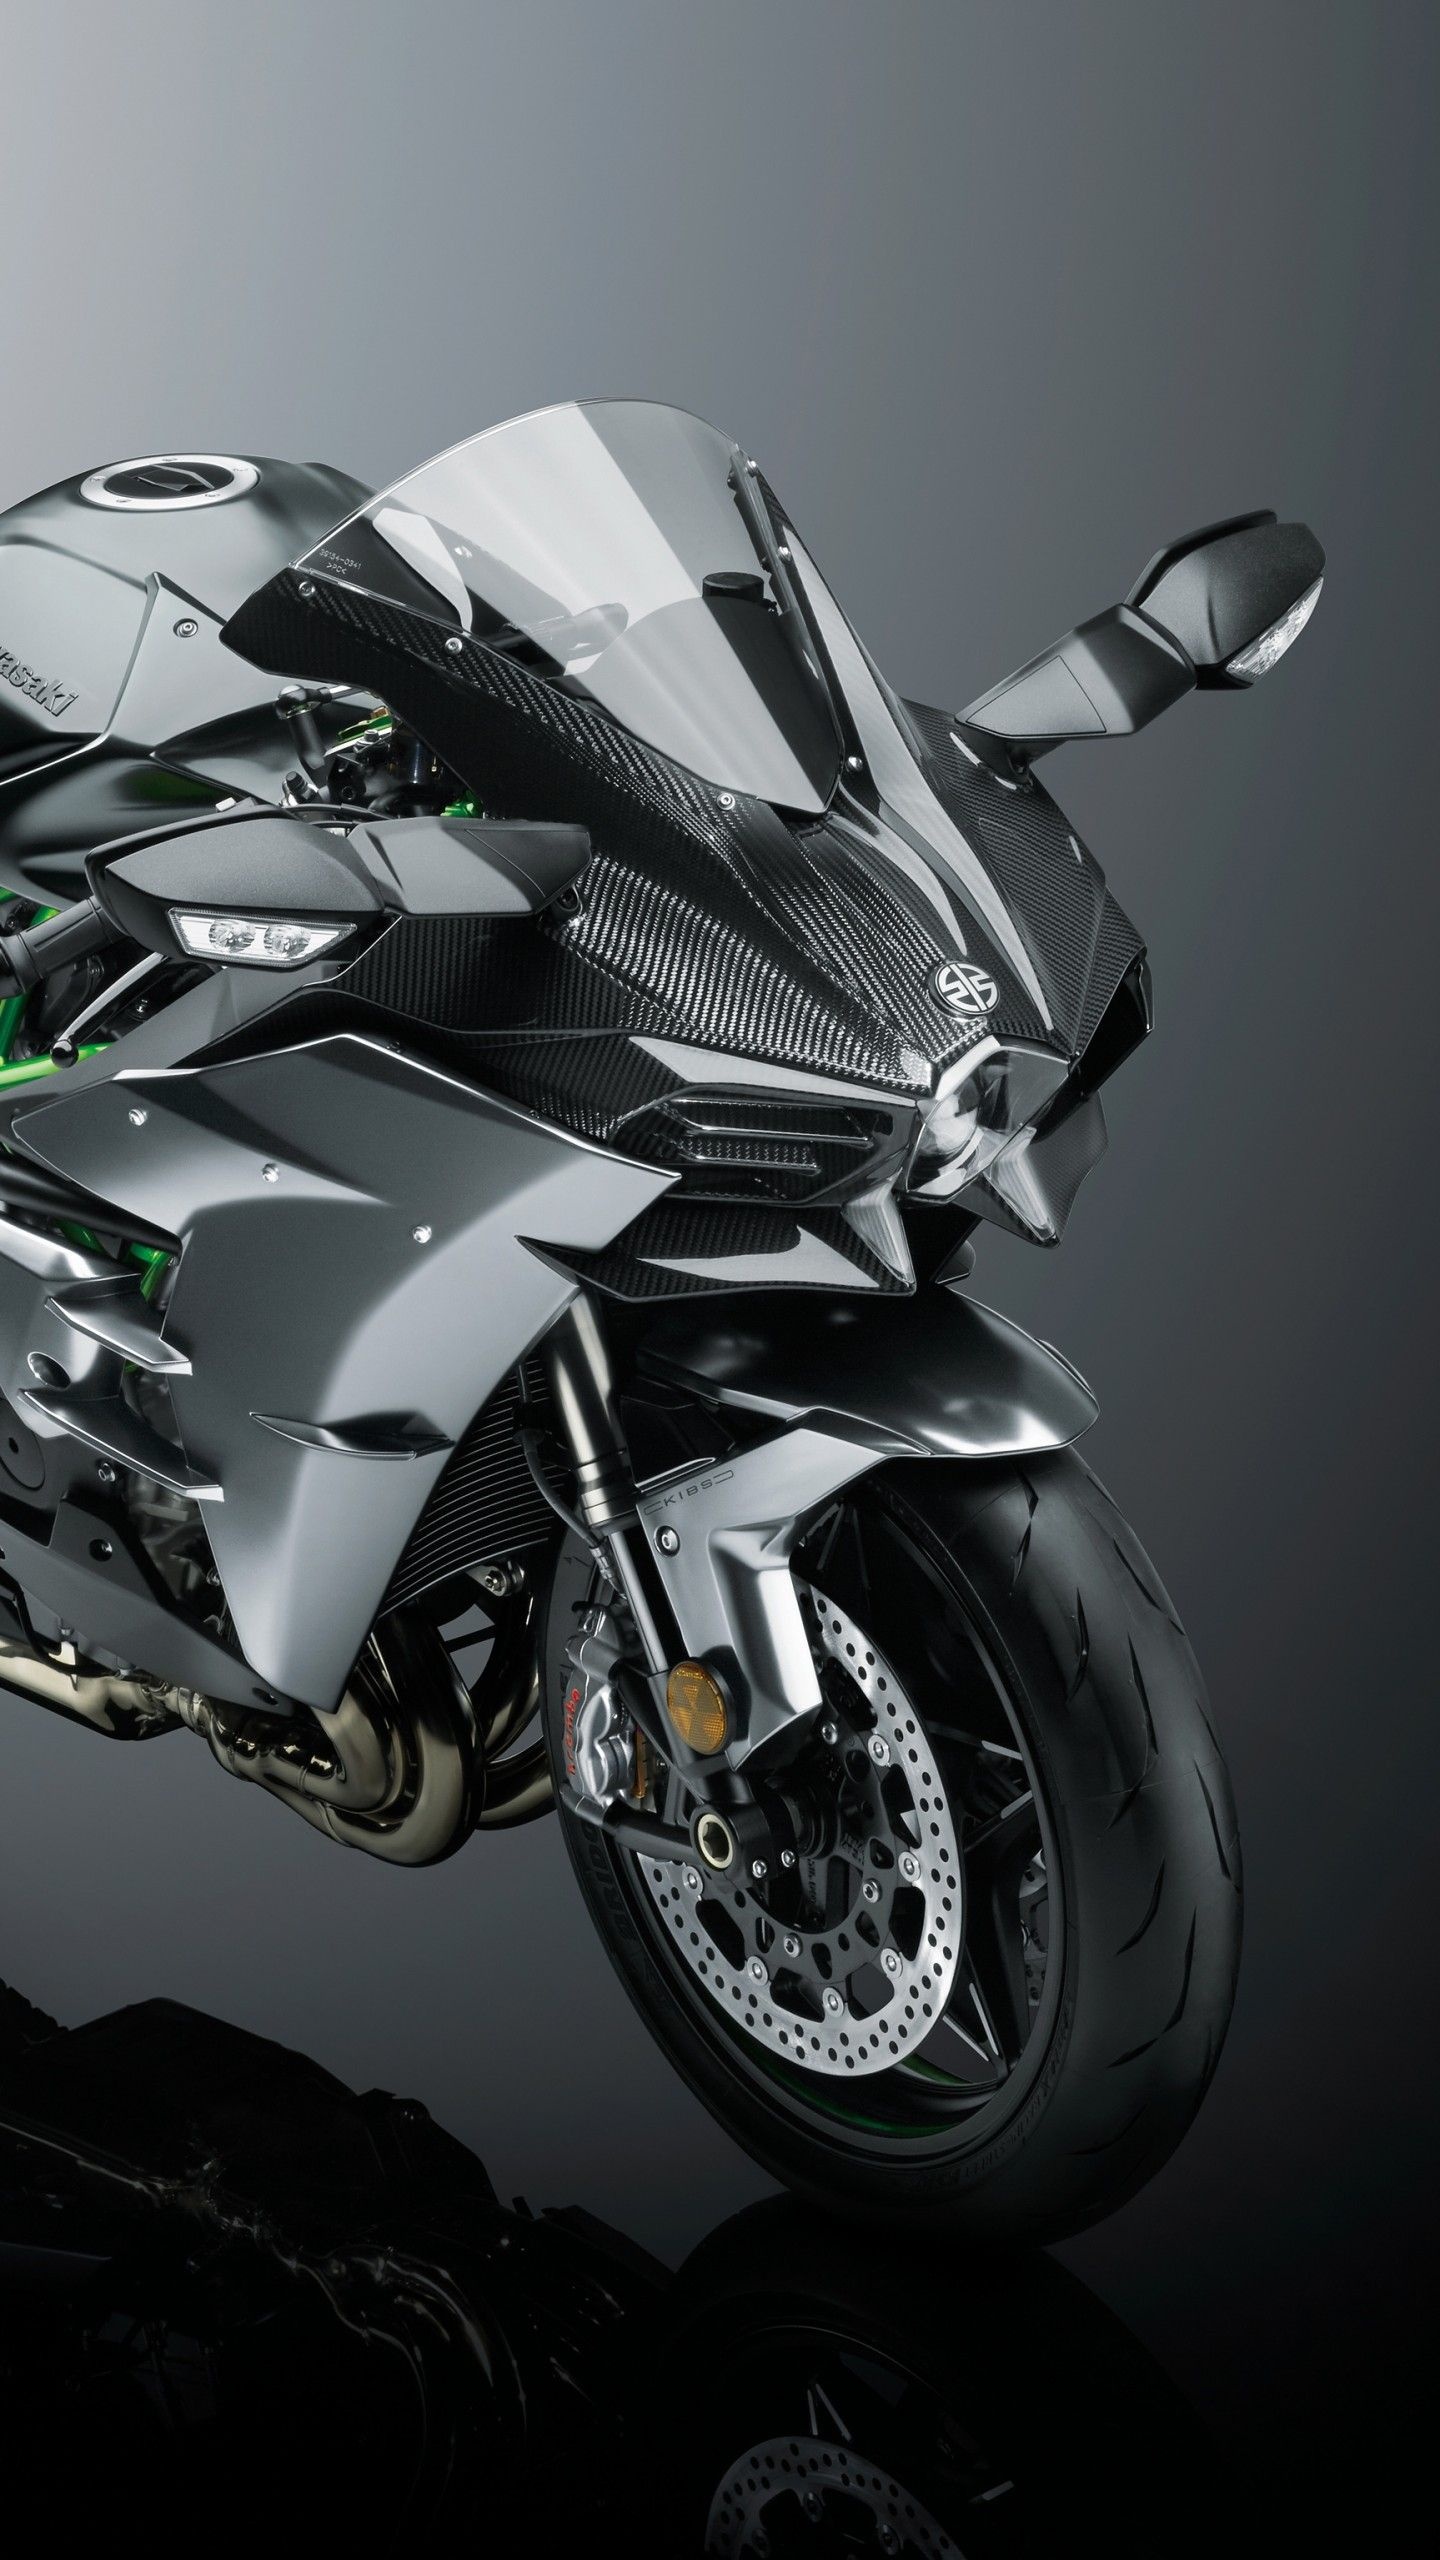 H2 Carbon, High-performance bike, Sleek design, Speed demon, 1440x2560 HD Phone